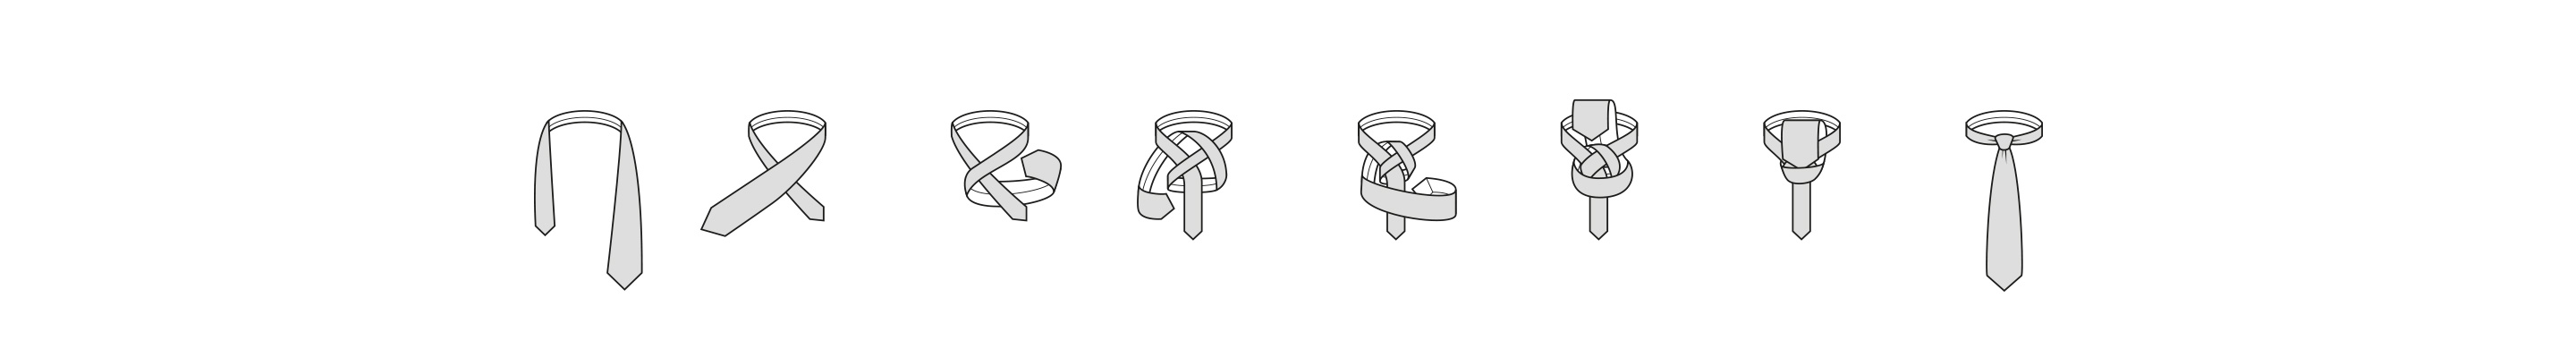 Half Windsor knot steps